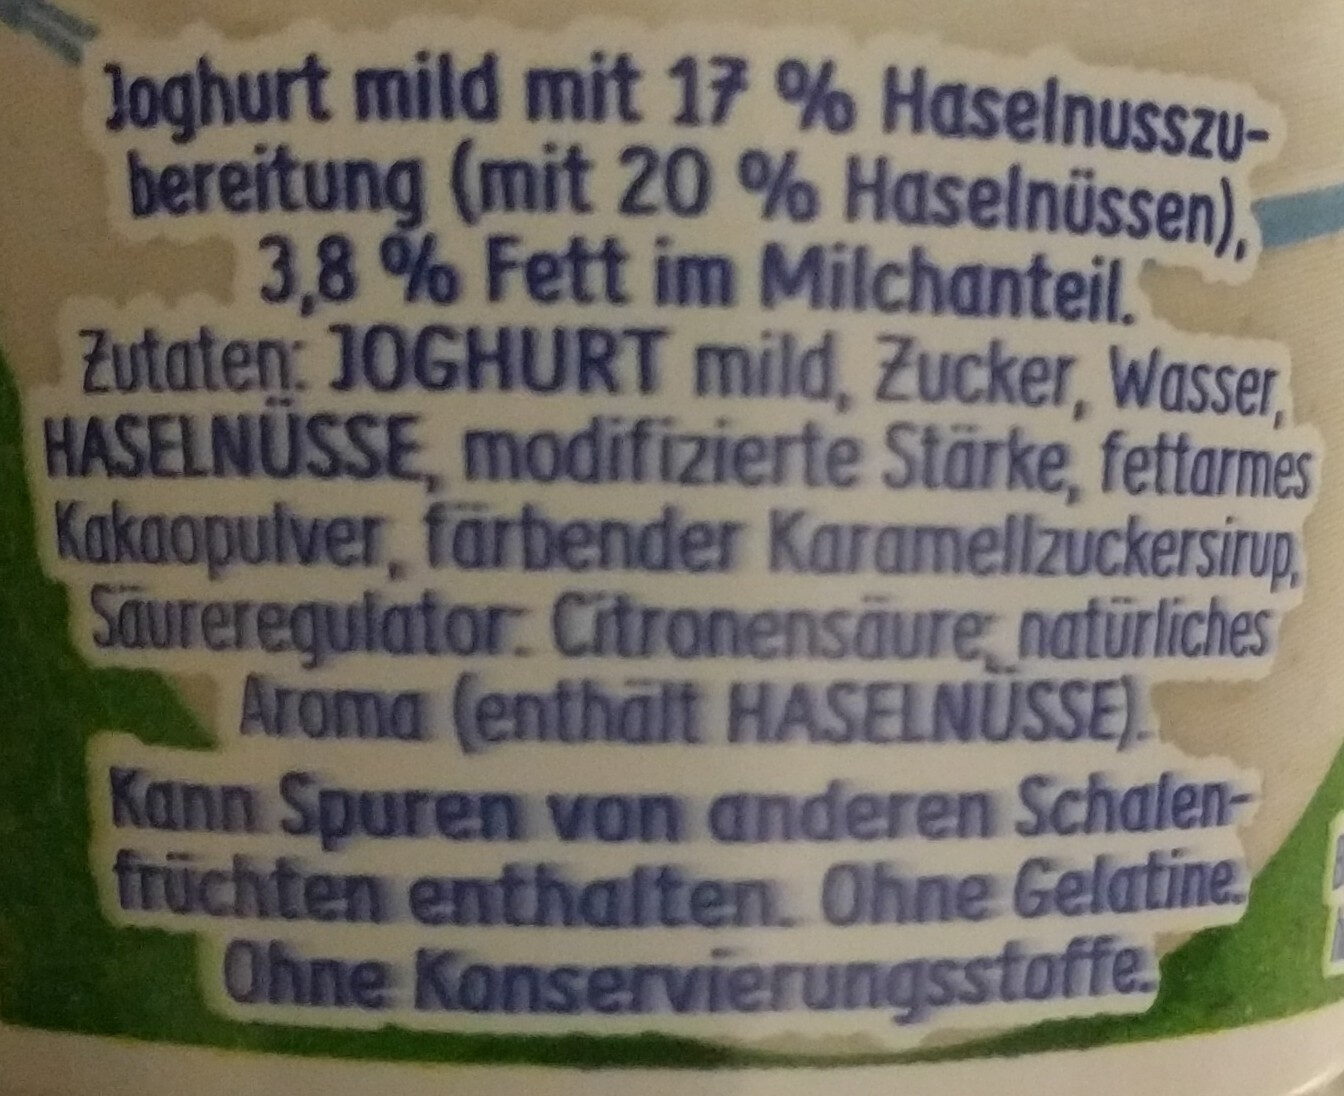 Ehrmann Almughurt Haselnuss - Ingredients - de